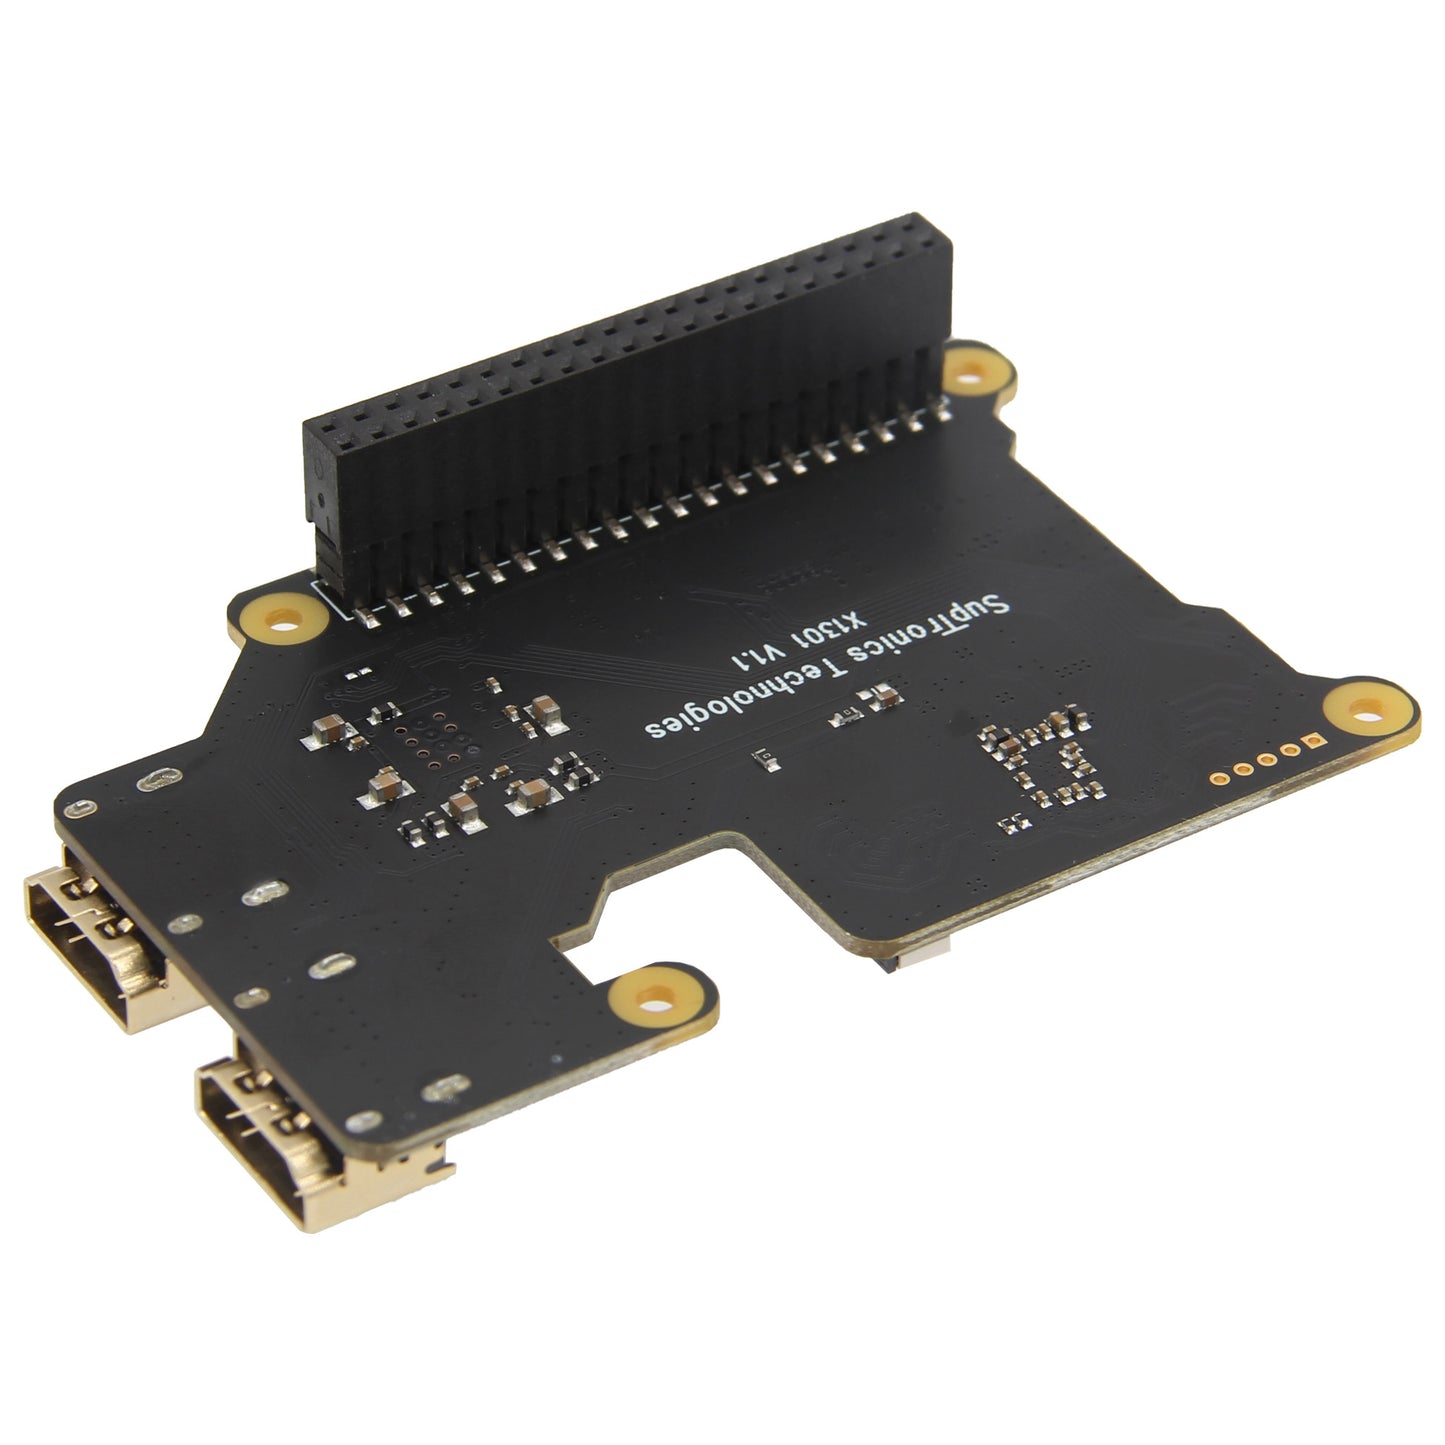 Geekworm X1301 HDMI to CSI-2 Shield for Raspberry Pi 5/4B/3B+/3B Support 1080P@60fps